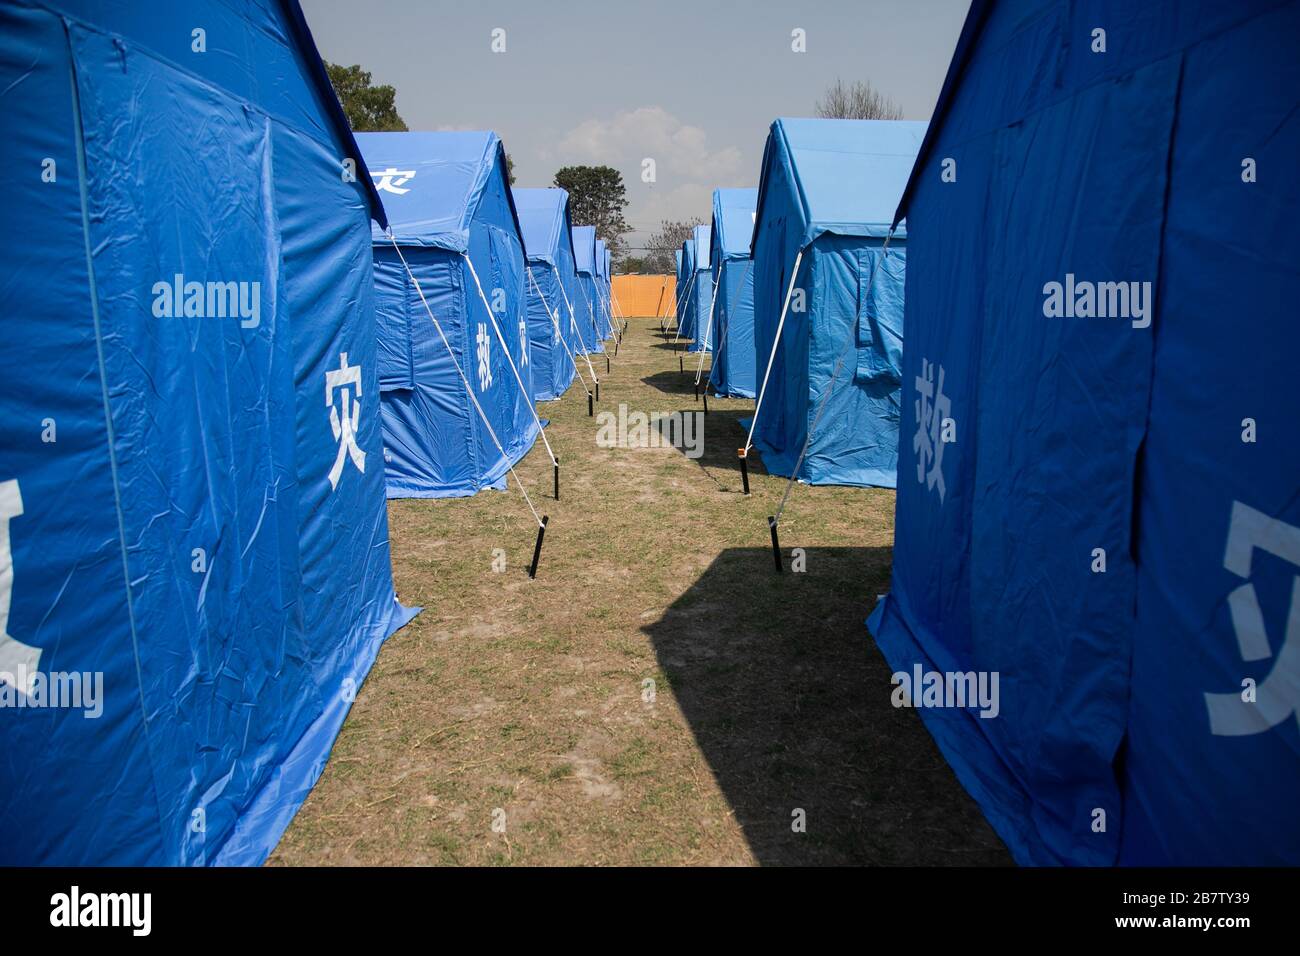 Una visión de una zona modelo de cuarentena en el cuartel general del ejército nepalés, en medio de preocupaciones sobre el brote del virus de la corona (COVID-19) en Katmandú.el ejército nepalés demuestra el proceso de control y procedimiento de cuarentena contra la infección del virus de la corona. Foto de stock